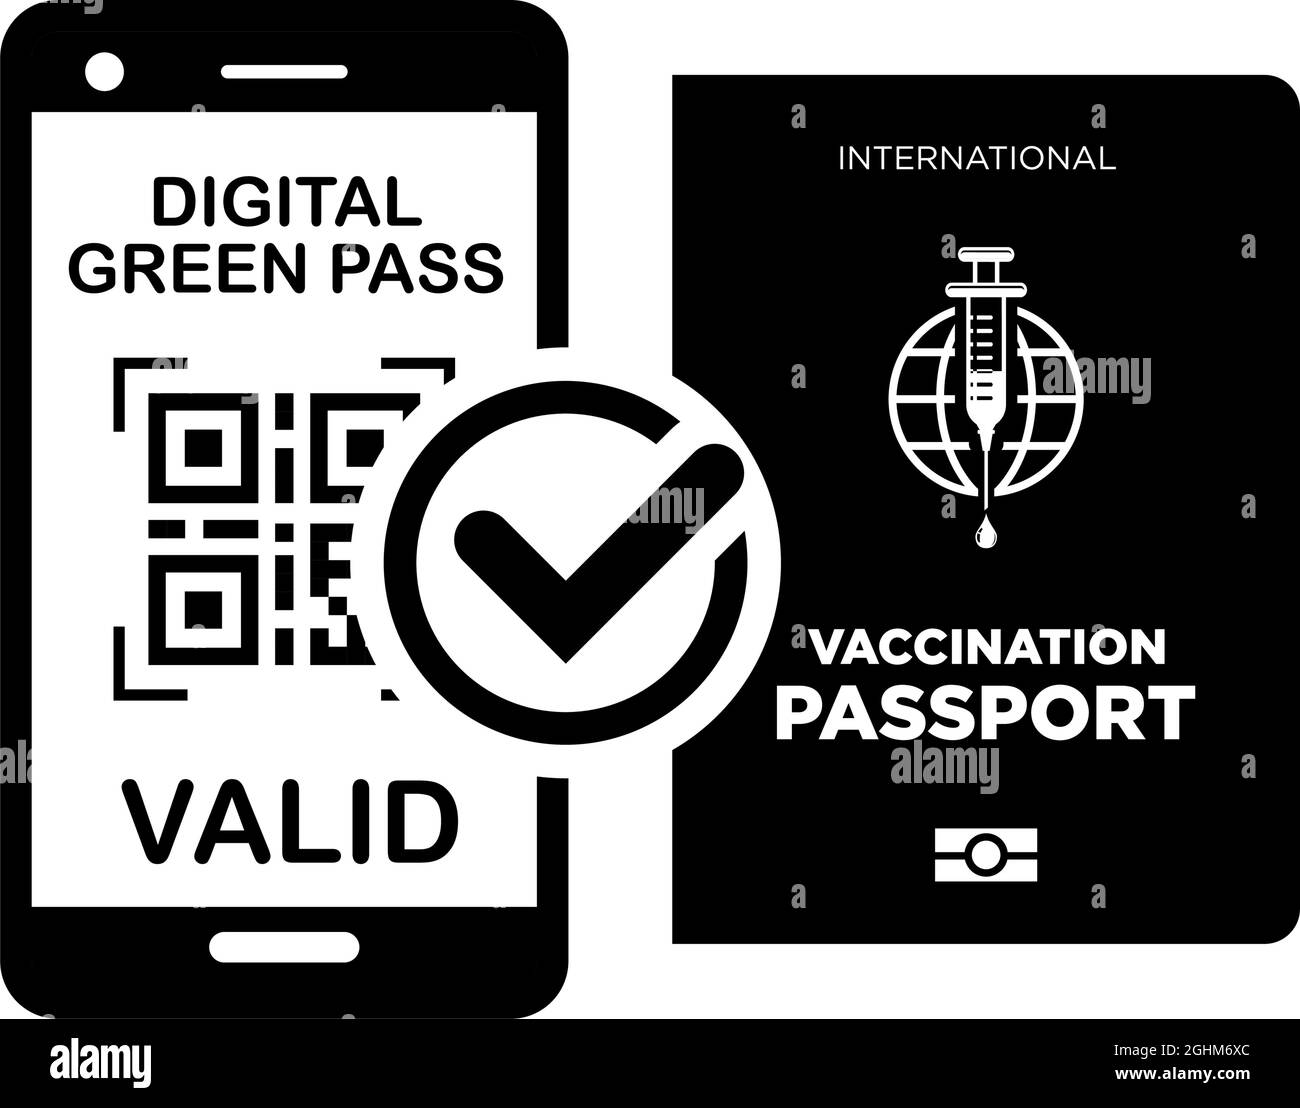 Passaporto di vaccinazione internazionale e green pass digitale su smartphone. Icone vettoriali su sfondo trasparente Illustrazione Vettoriale